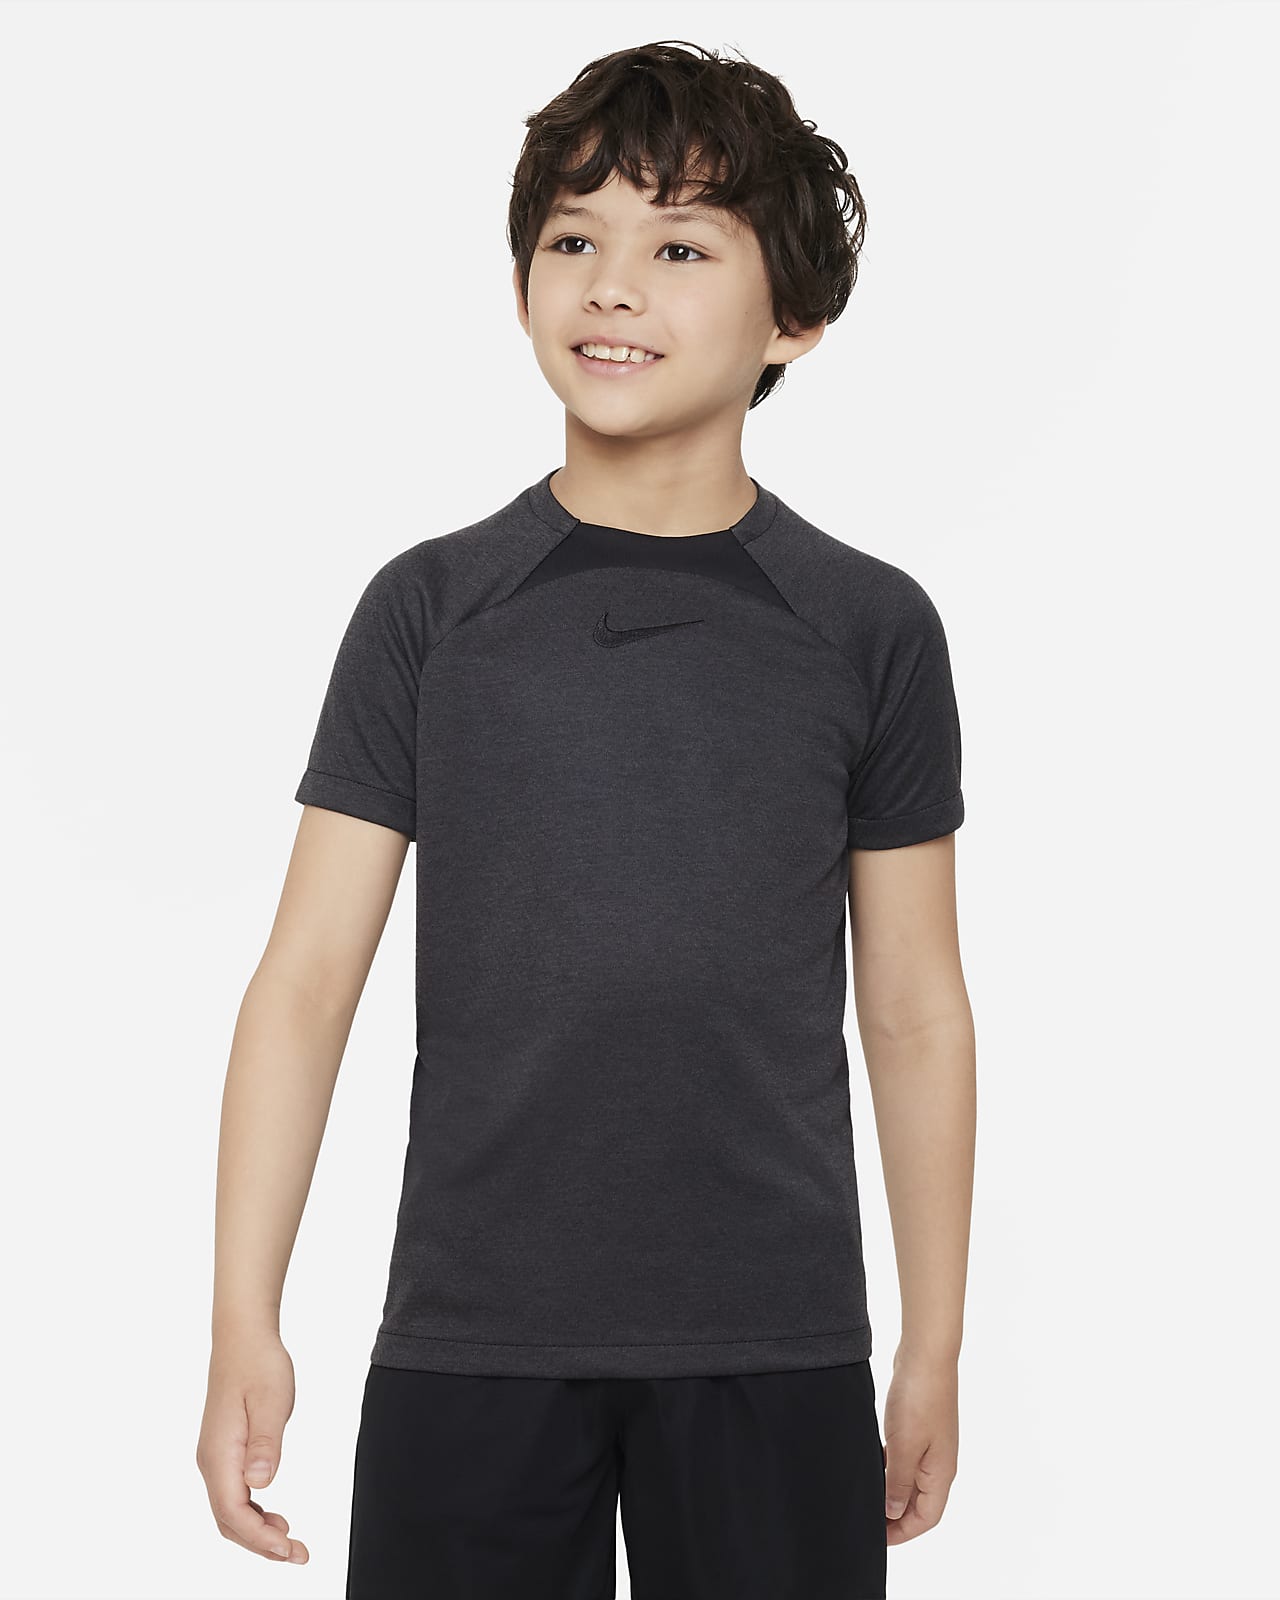 Ποδοσφαιρική μπλούζα Nike Dri-FIT Academy για μεγάλα παιδιά